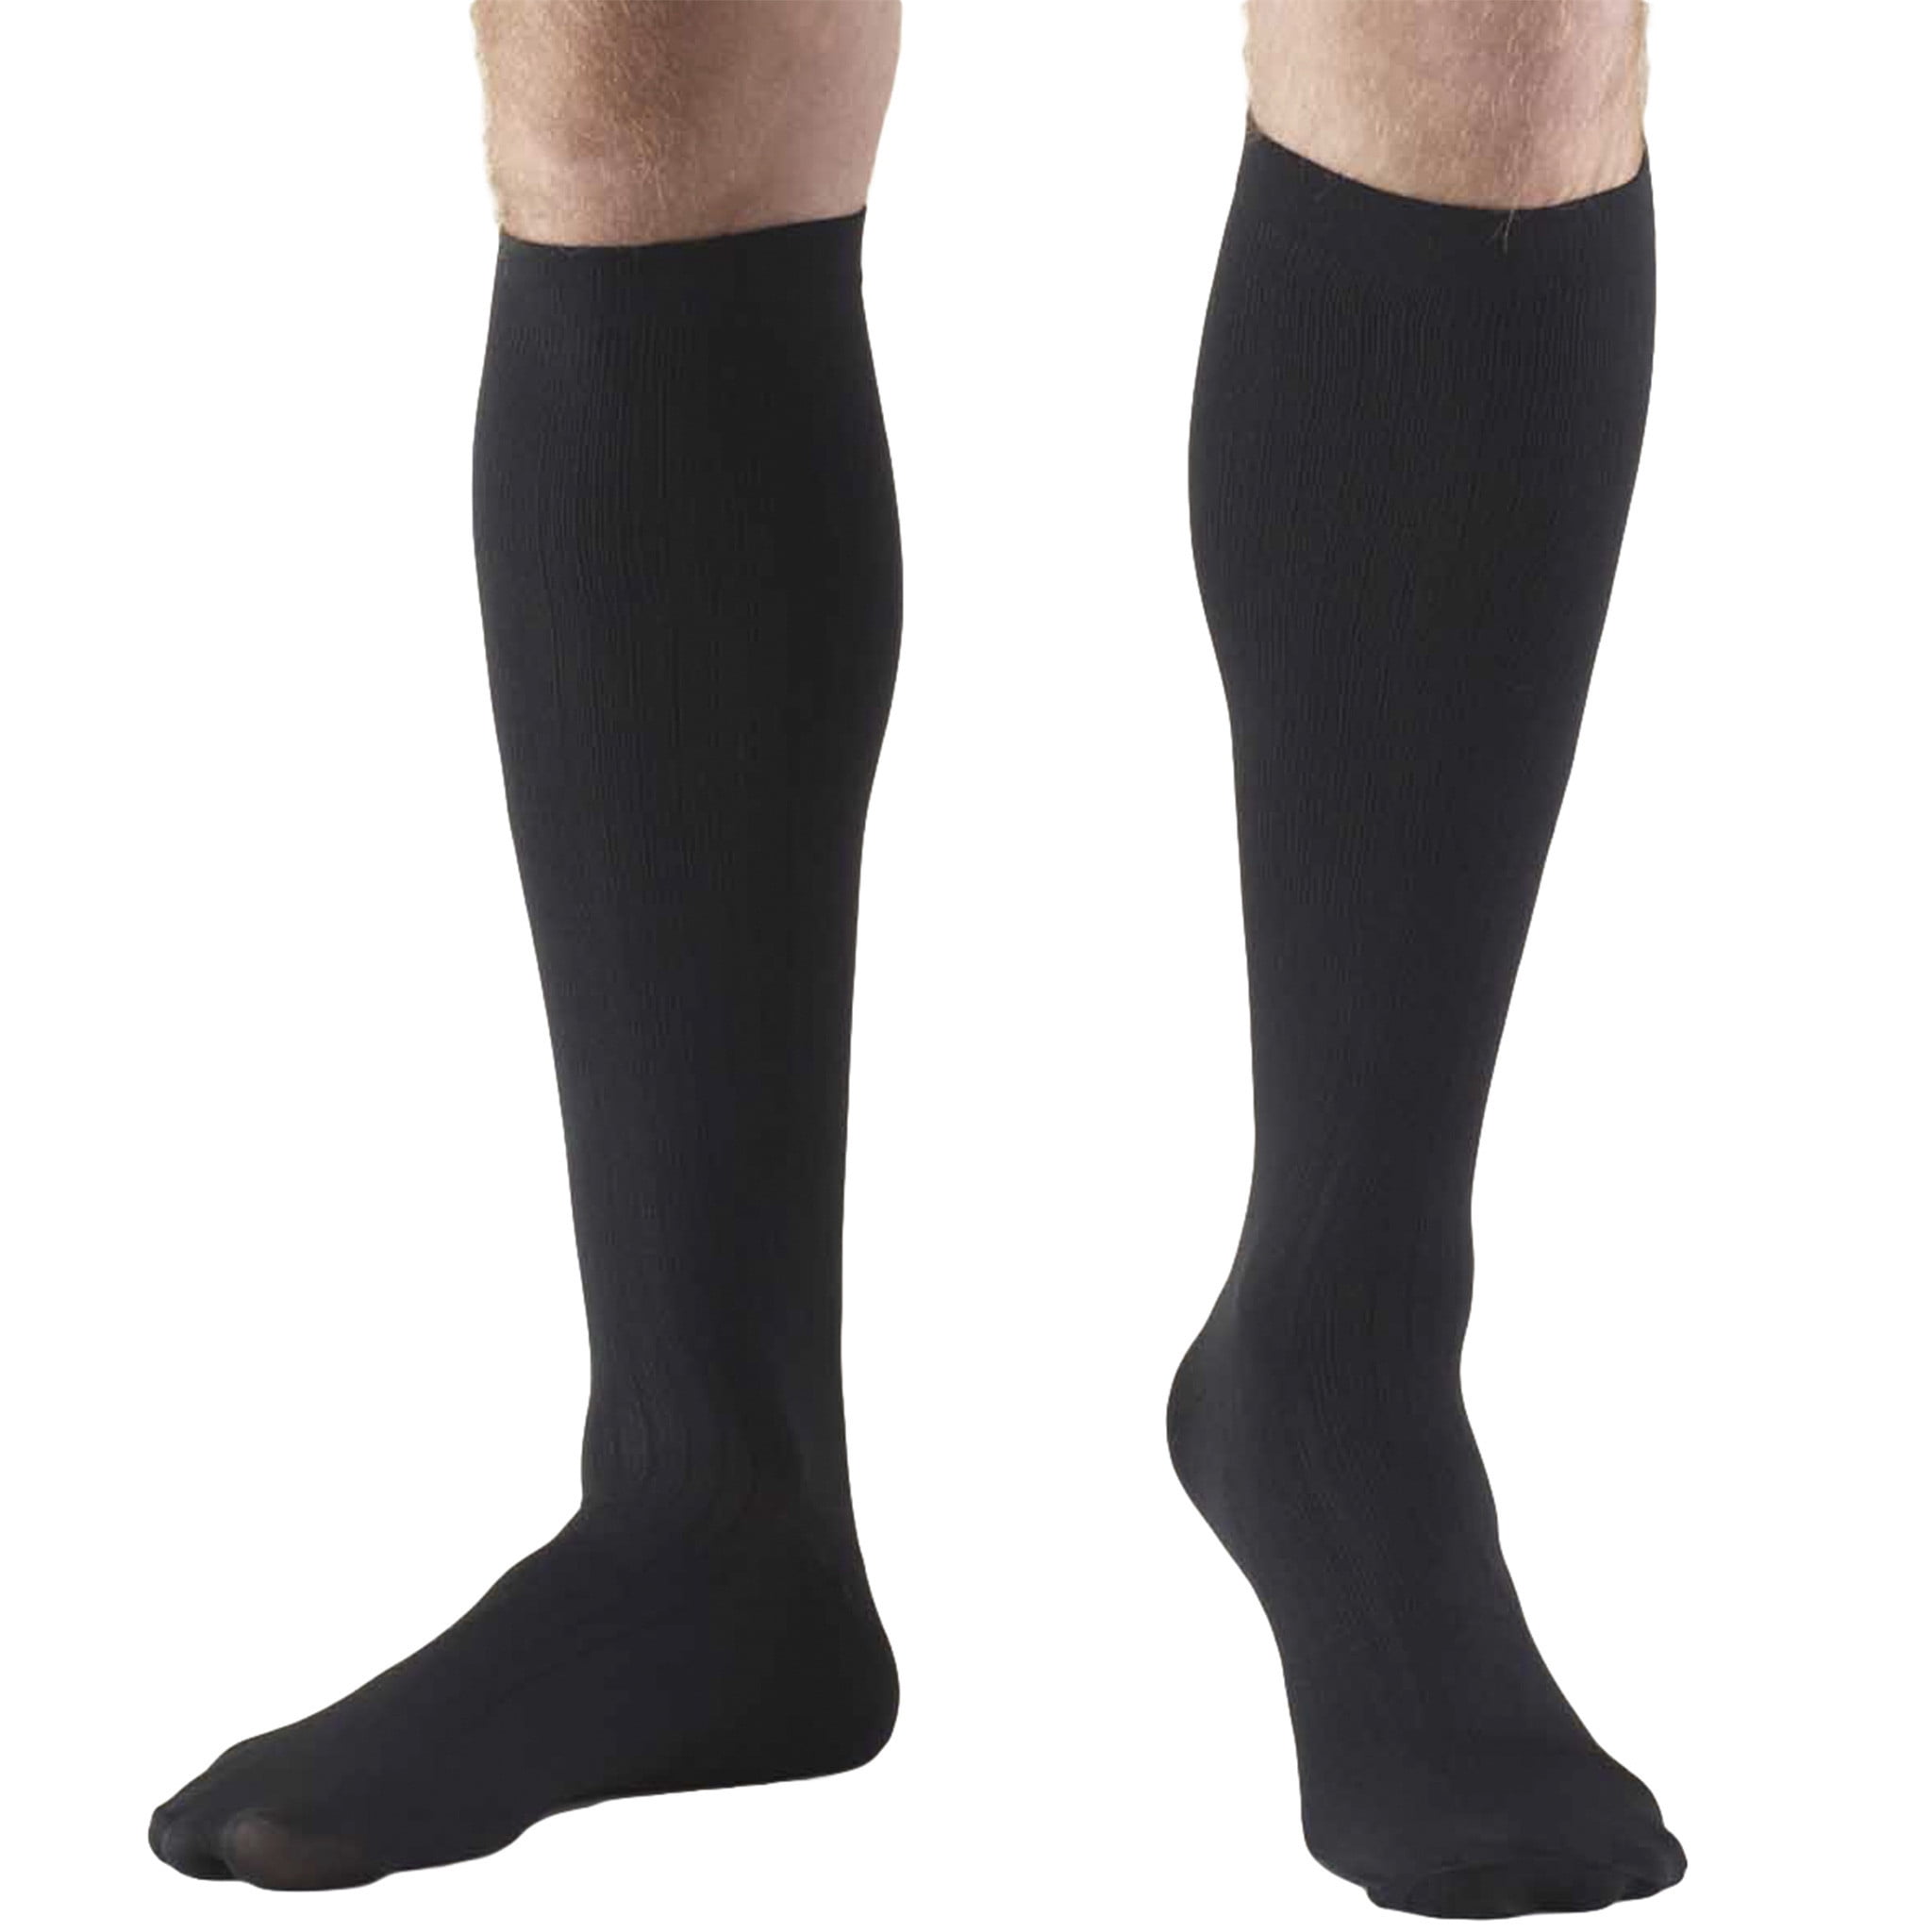 Photo 1 of Truform Men's Socks, Knee High, Dress Style: 8-15 mmHg, Black, Large